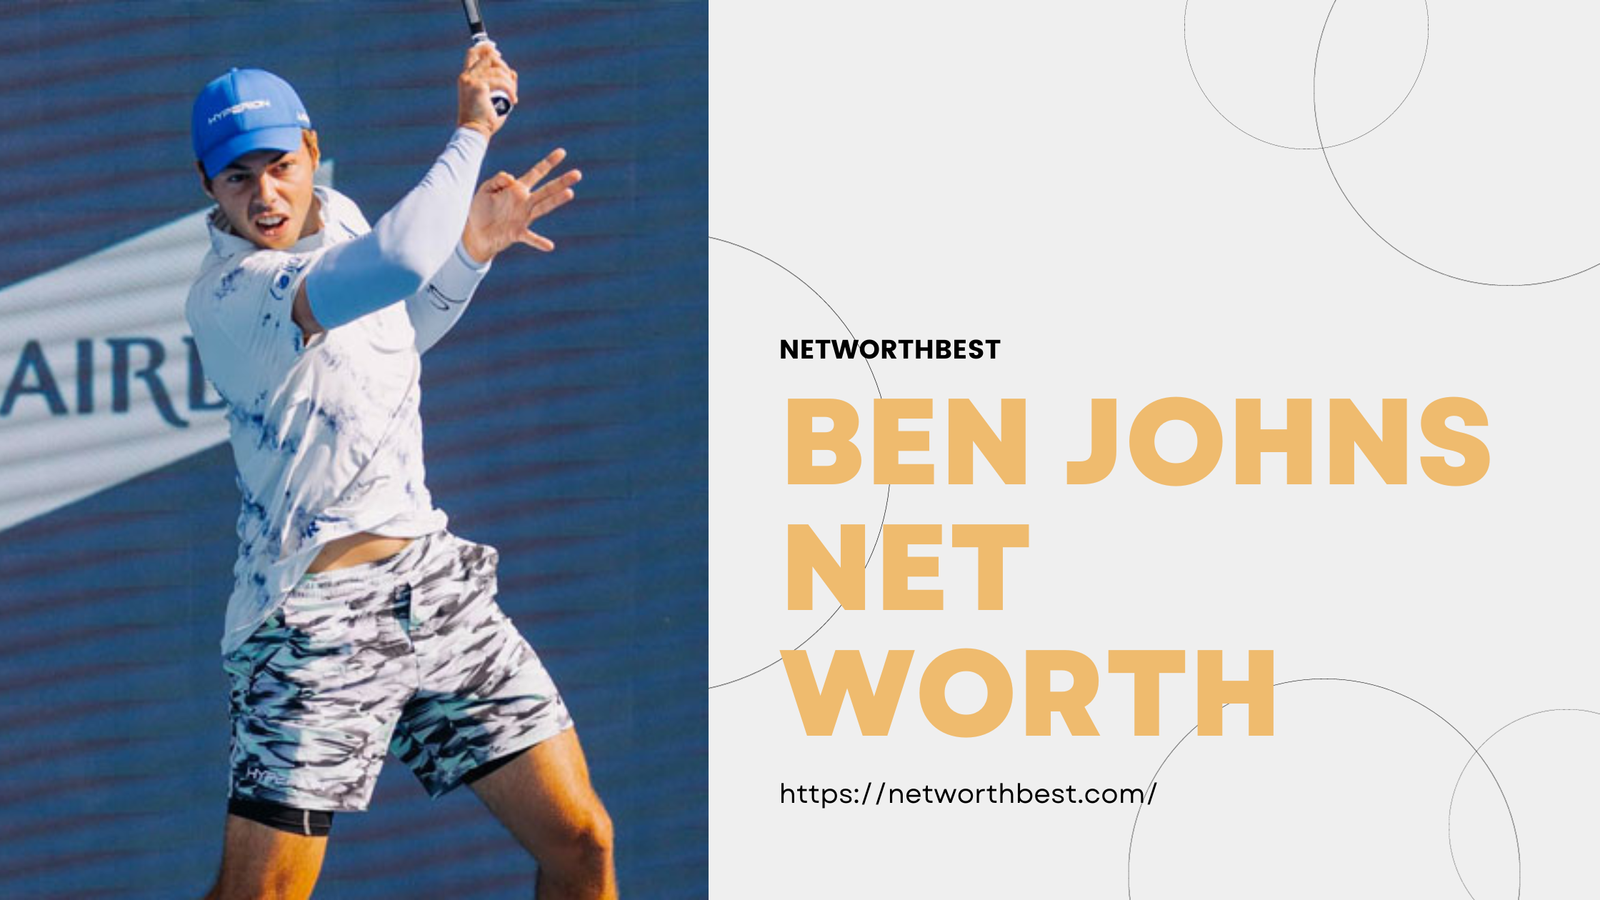 Ben Johns Net Worth